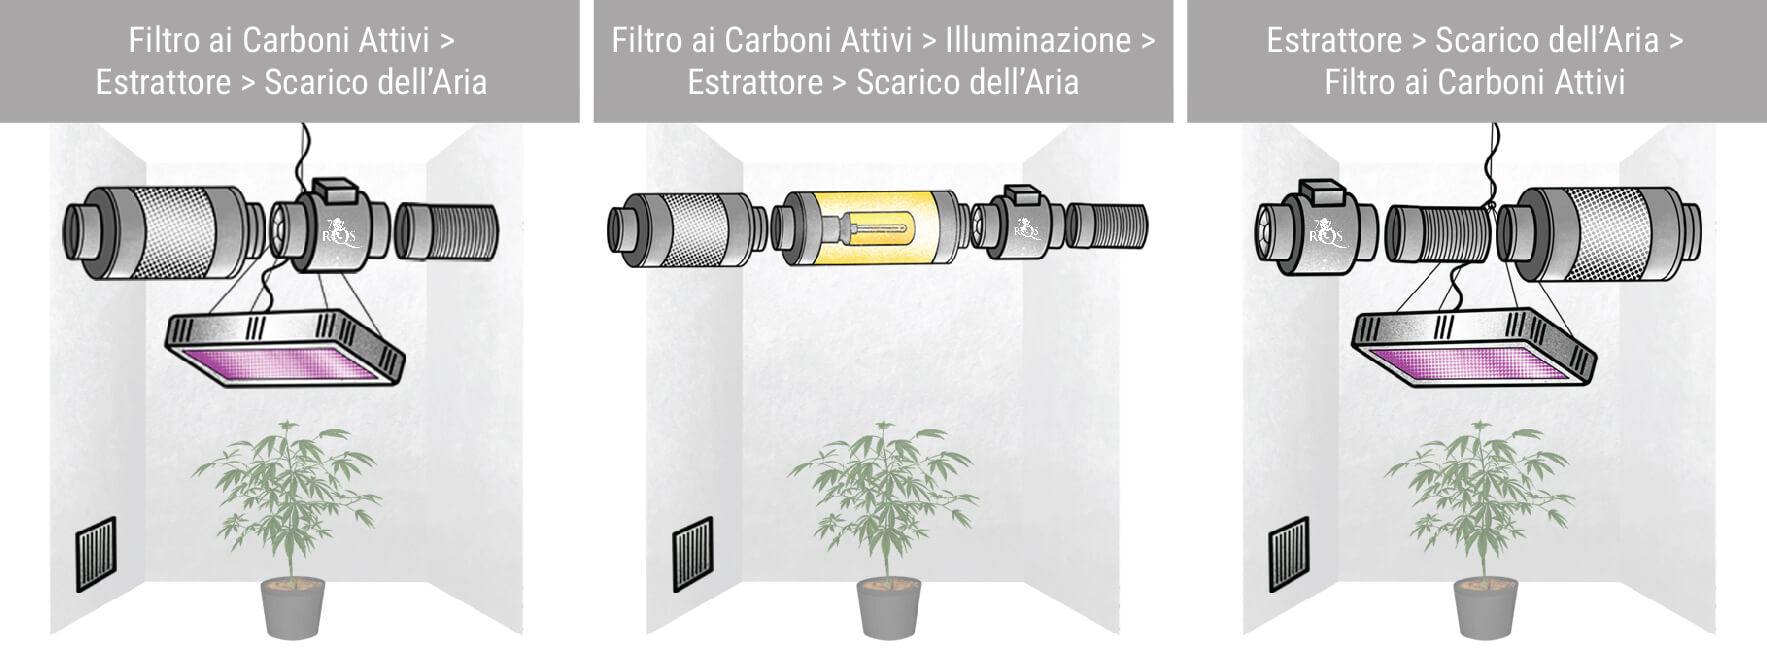 Diverse Configurazioni con Estrattore d'Aria e Filtri ai Carboni Attivi